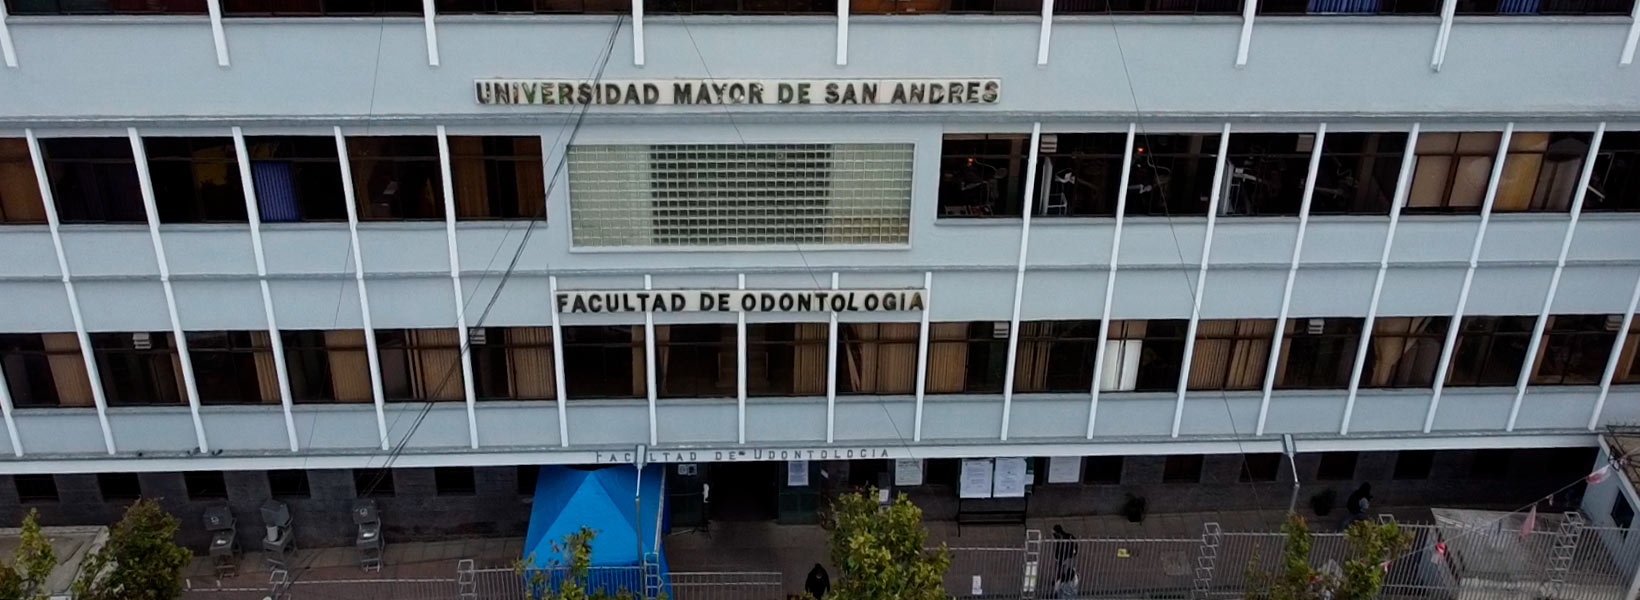 Facultad de Odontología - Universidad Mayor de San Andrés